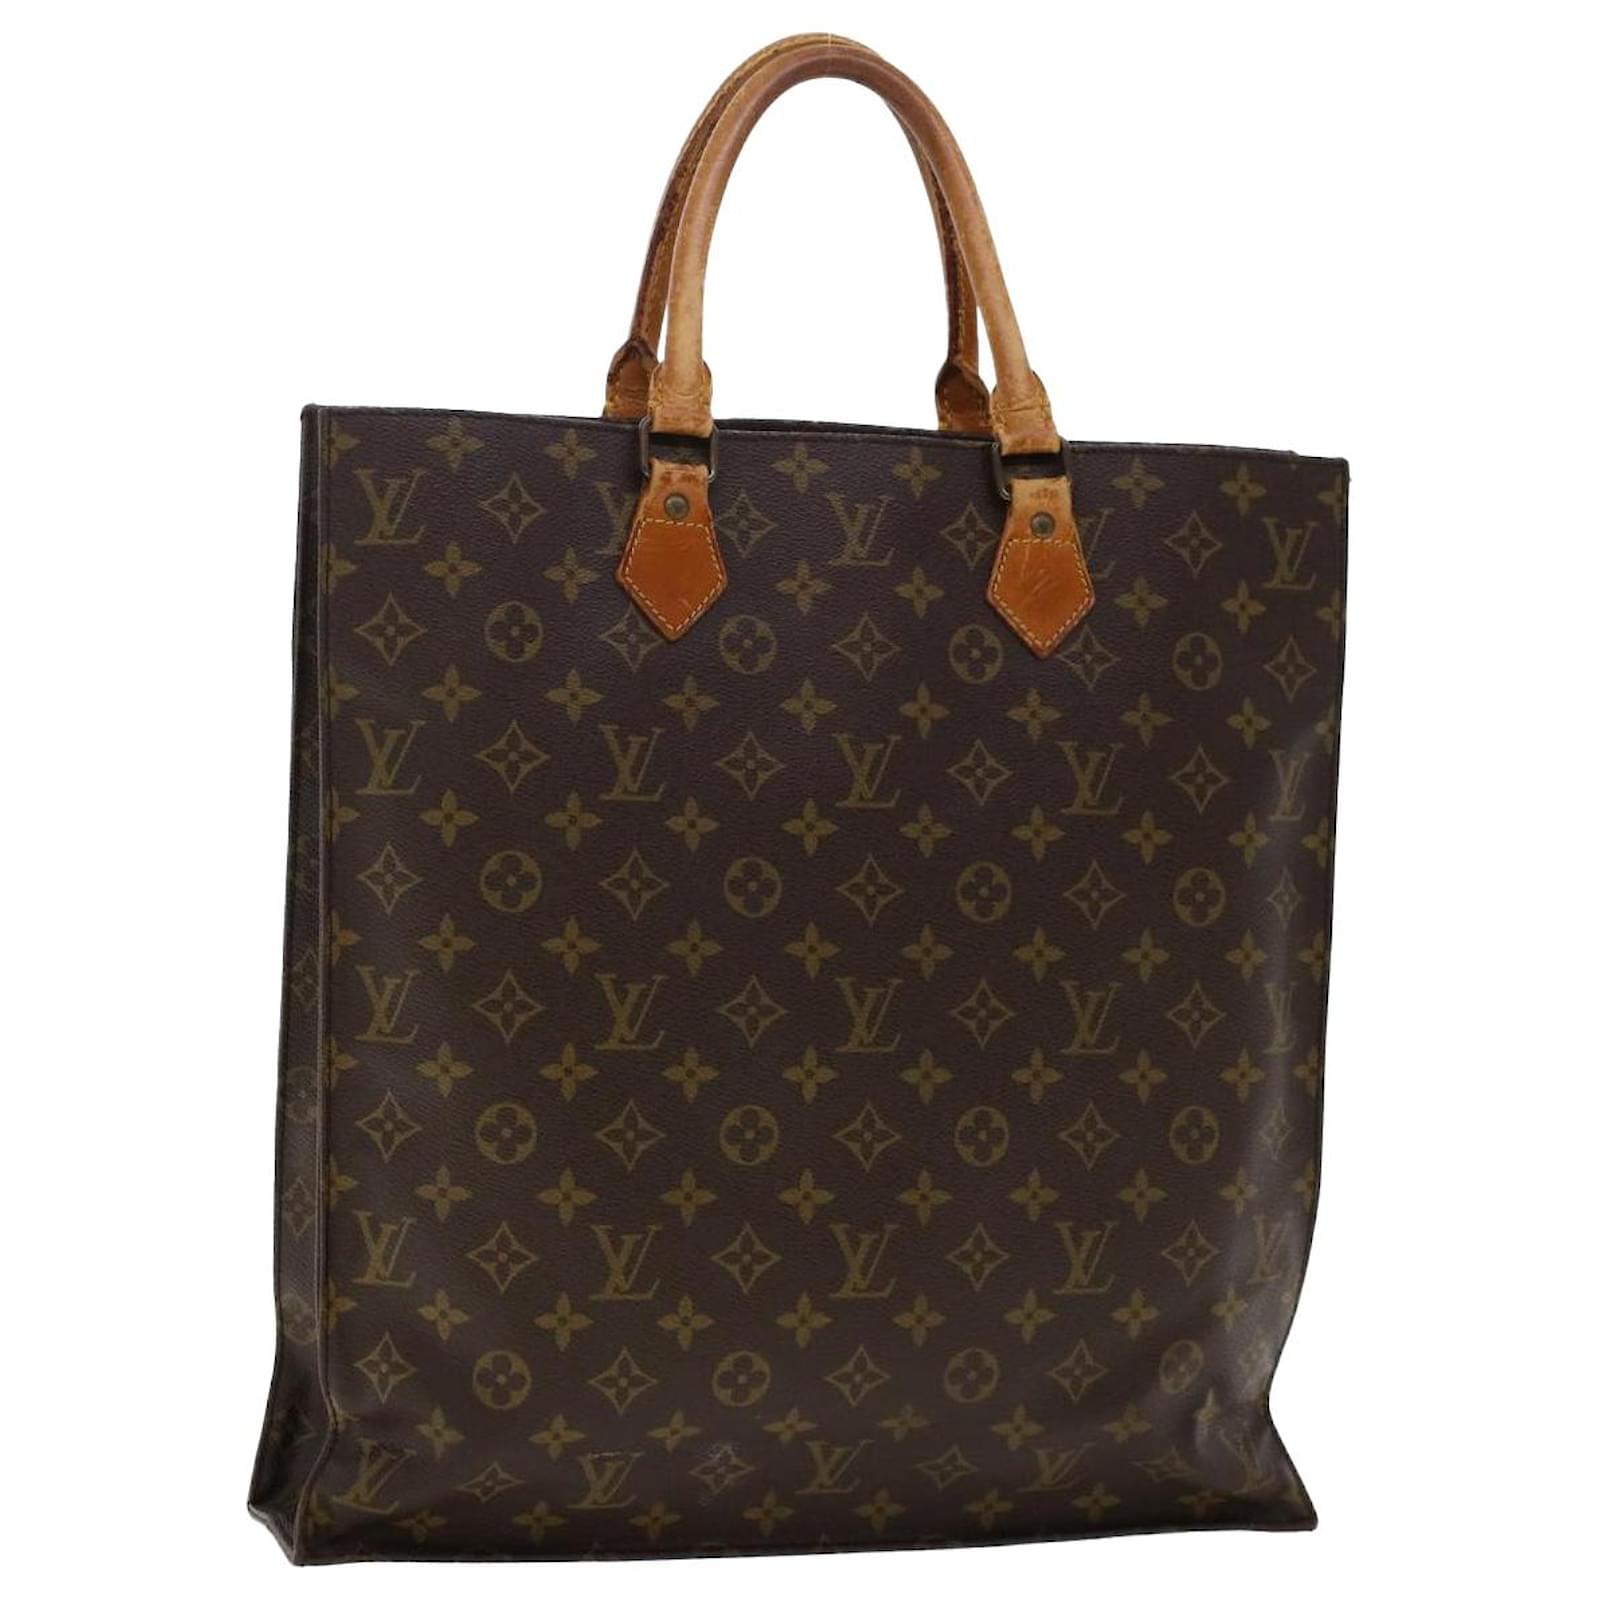 Louis Vuitton Sac Plat Handbag Organizer in 2 sizes. keeps the bag